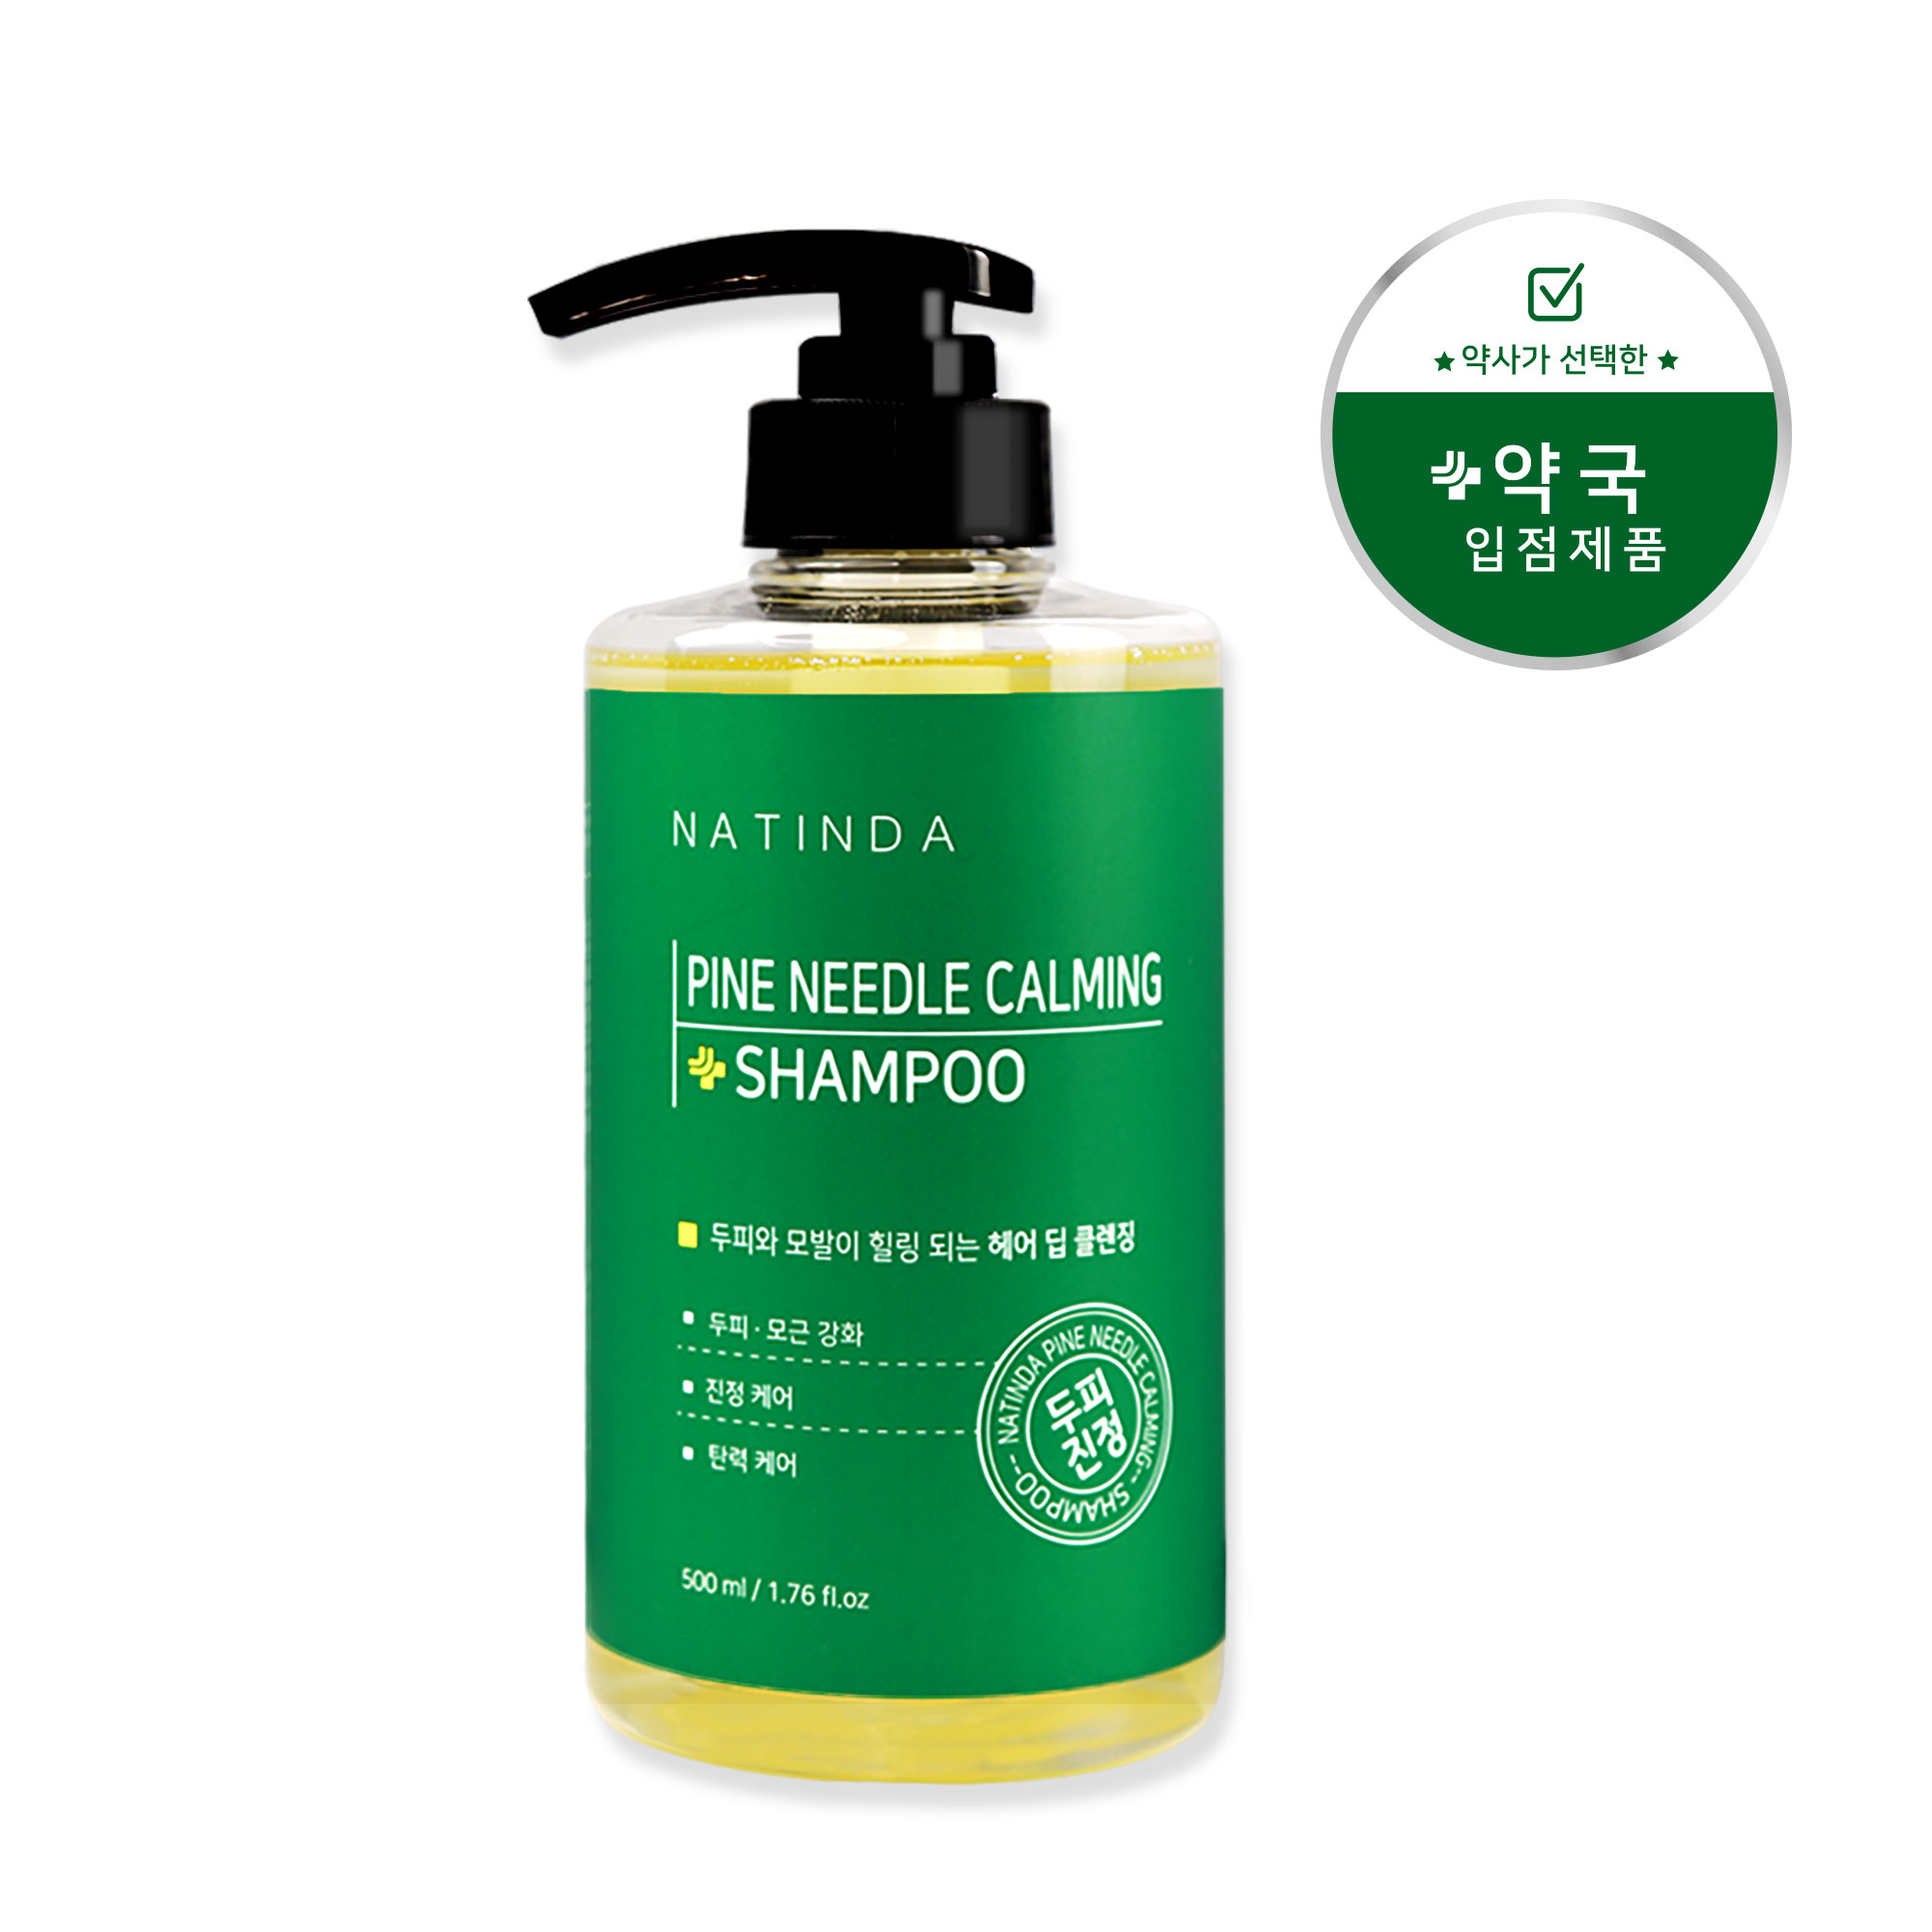 Natinda Pinidle Caming Shampoo 500g / Dầu gội có tính axit nhẹ tốt nhất cho da đầu